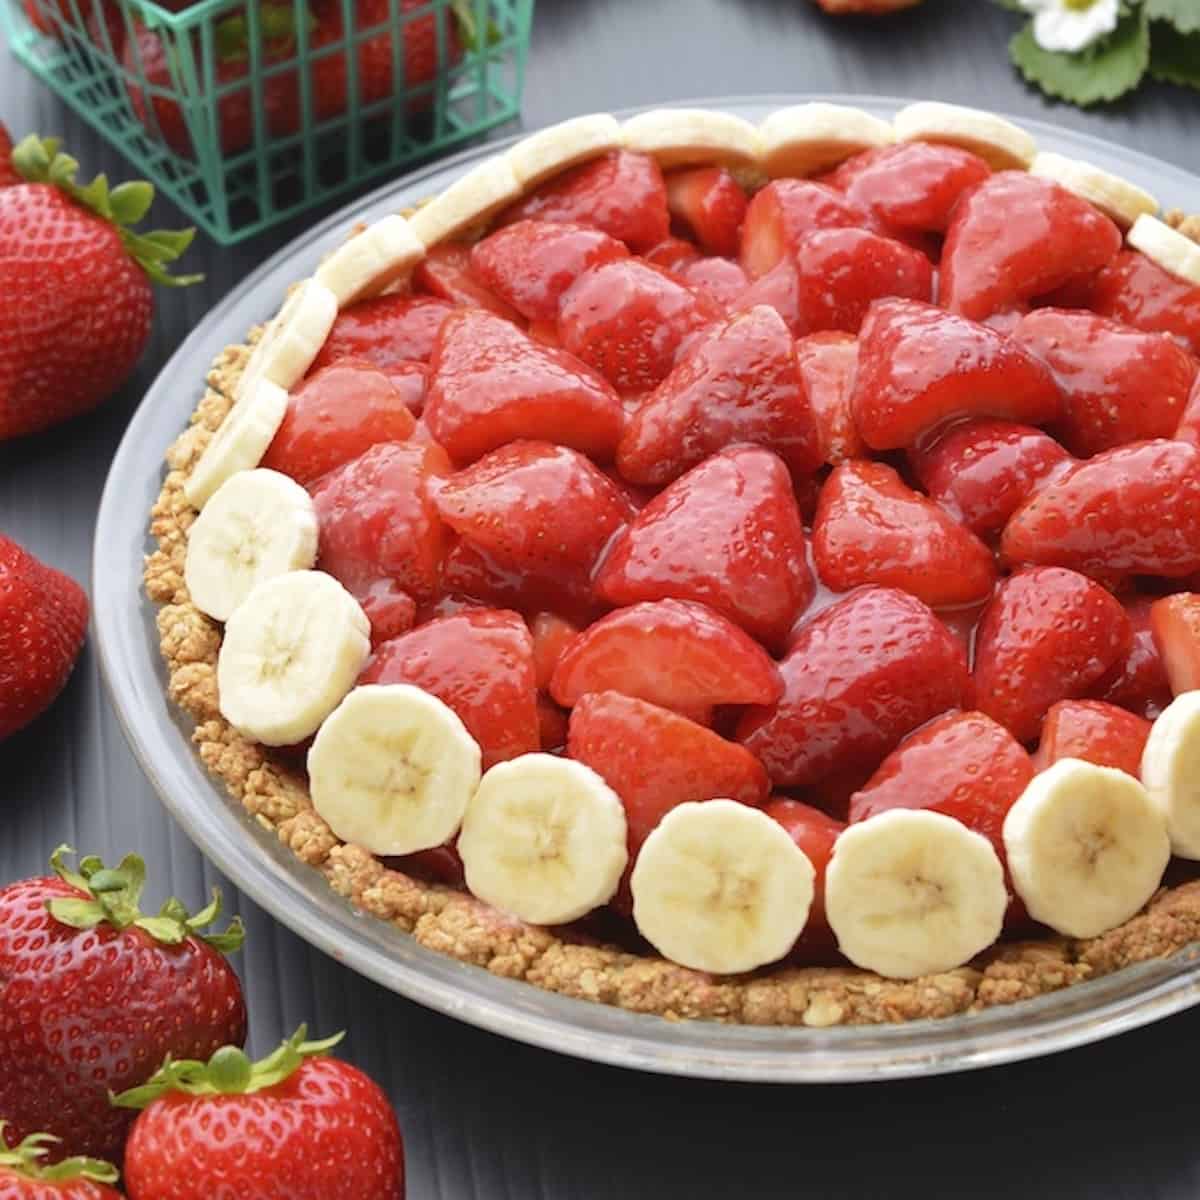 Vegan strawberry pie in a glass pie dish.